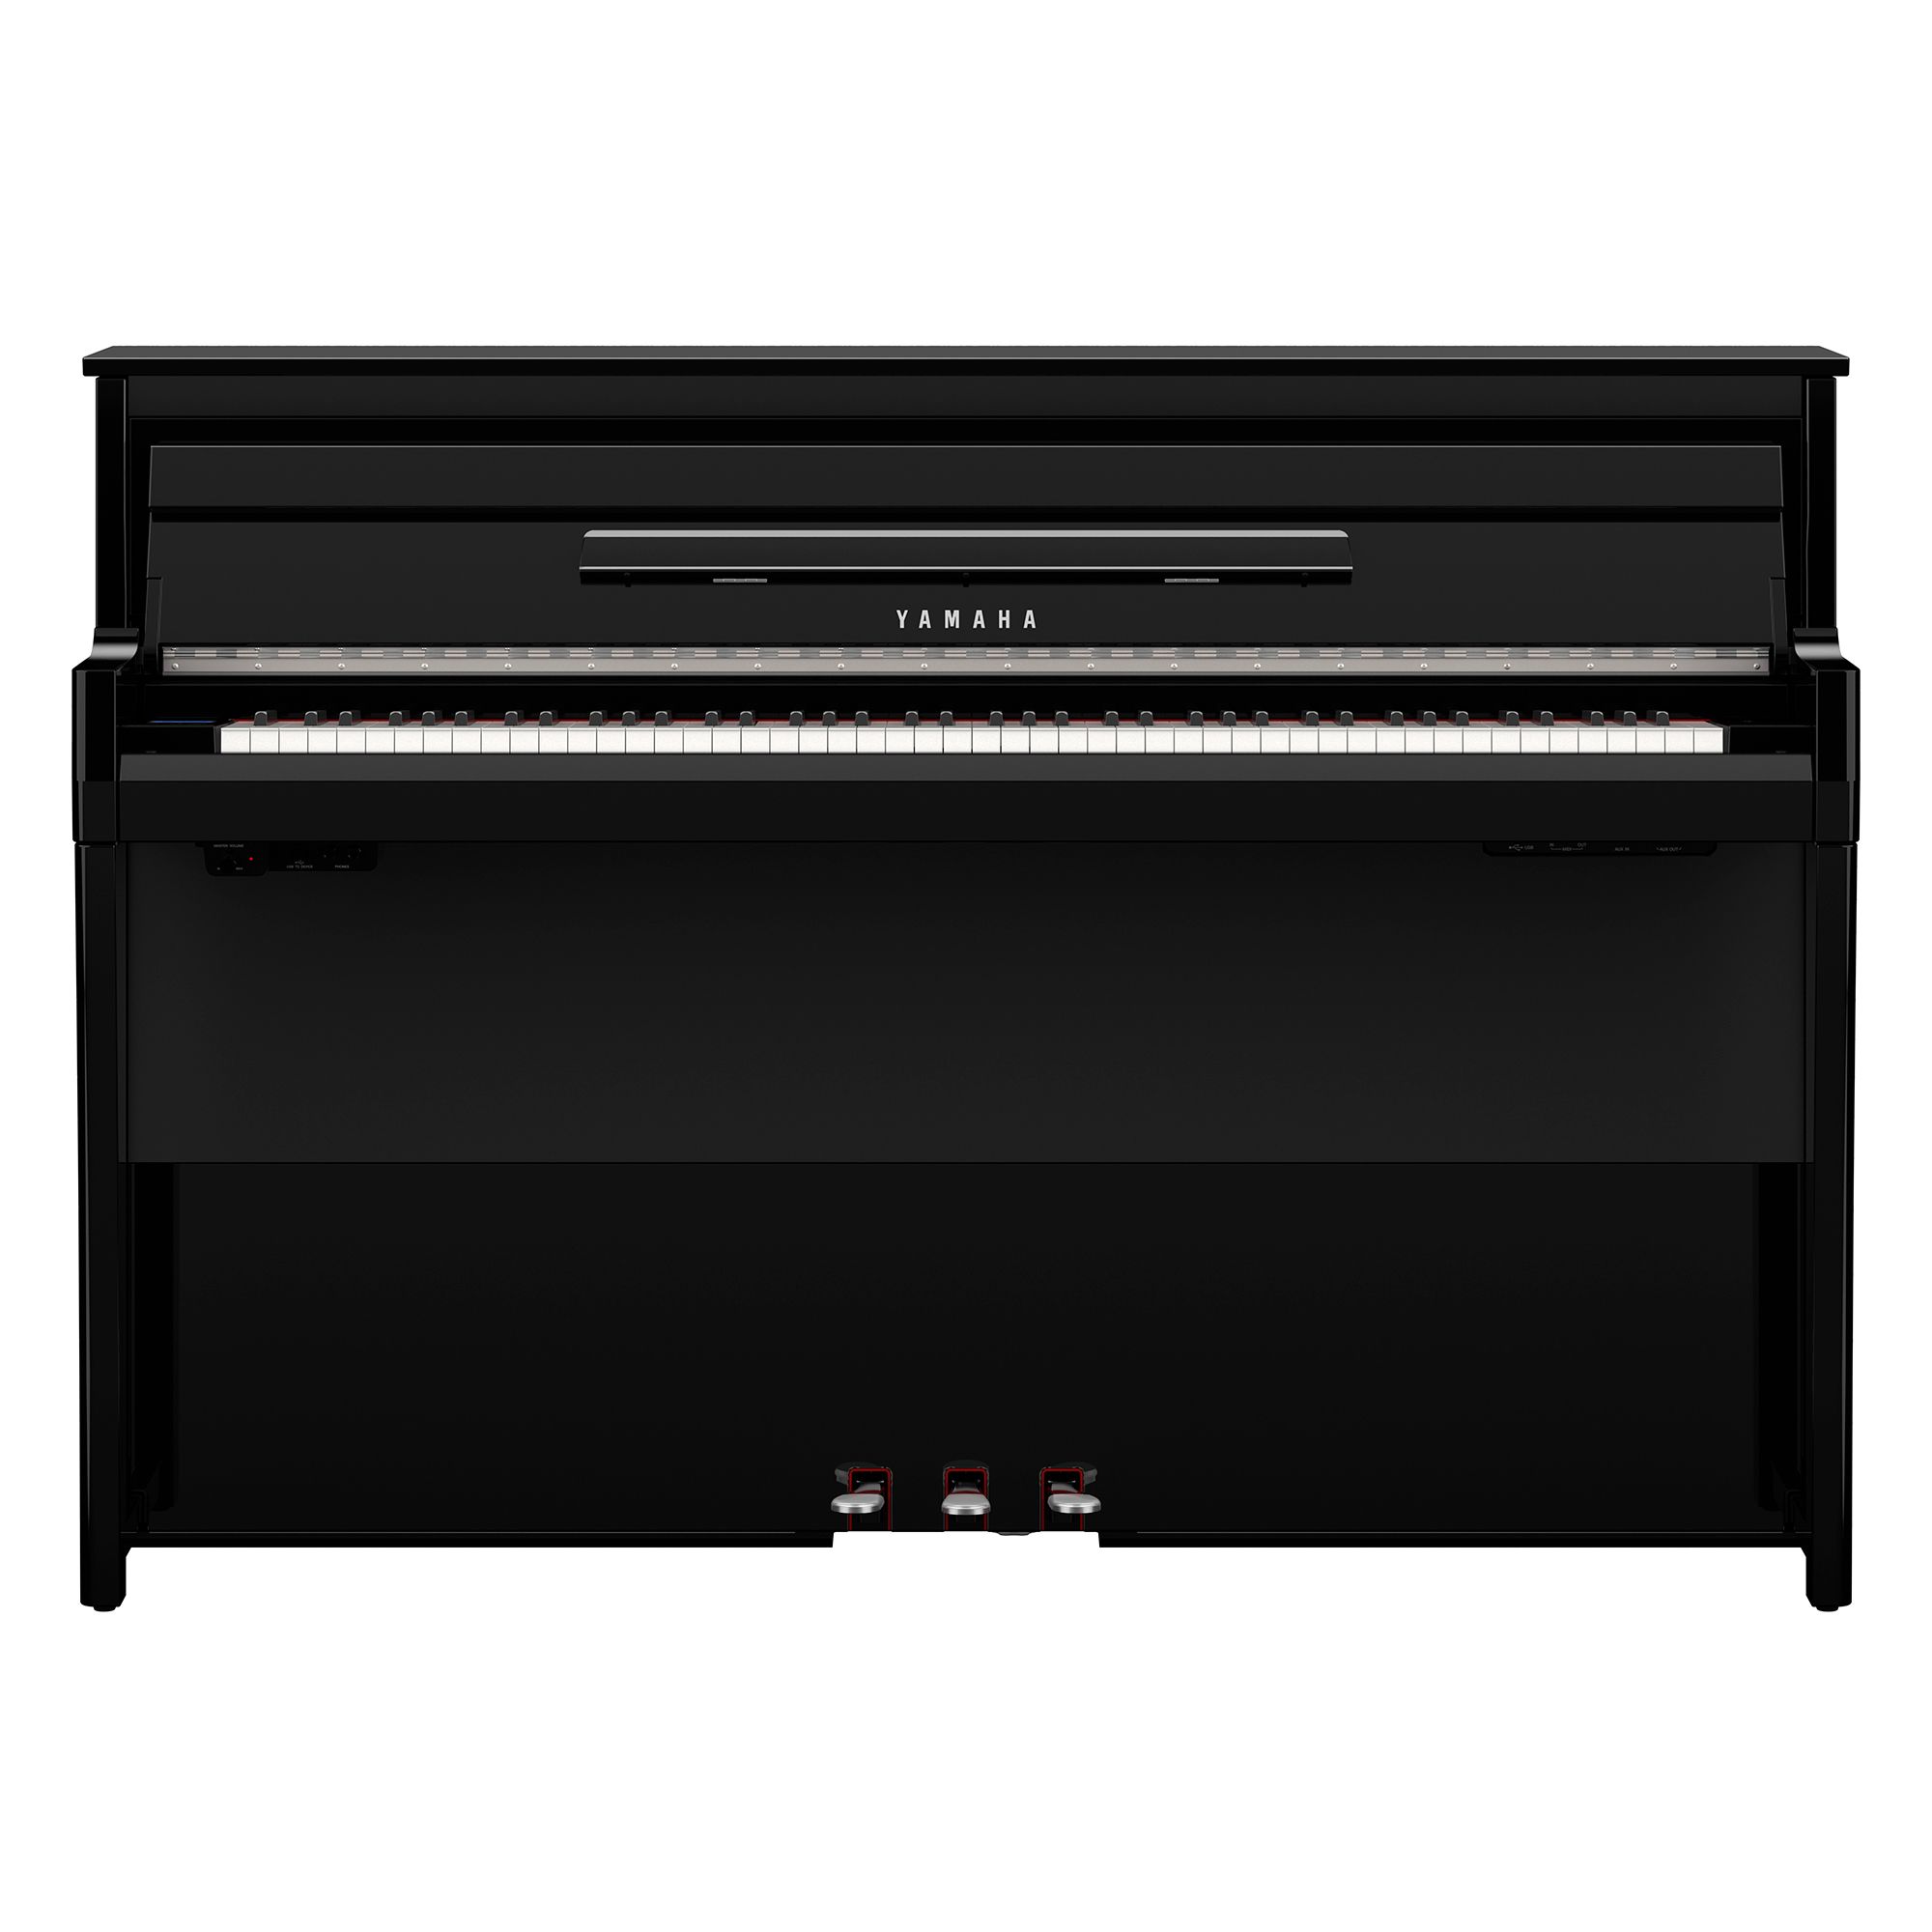 NU-1XA PE Avant Grand Hybrid Piano (Lieferzeit 12-18 Werktage)